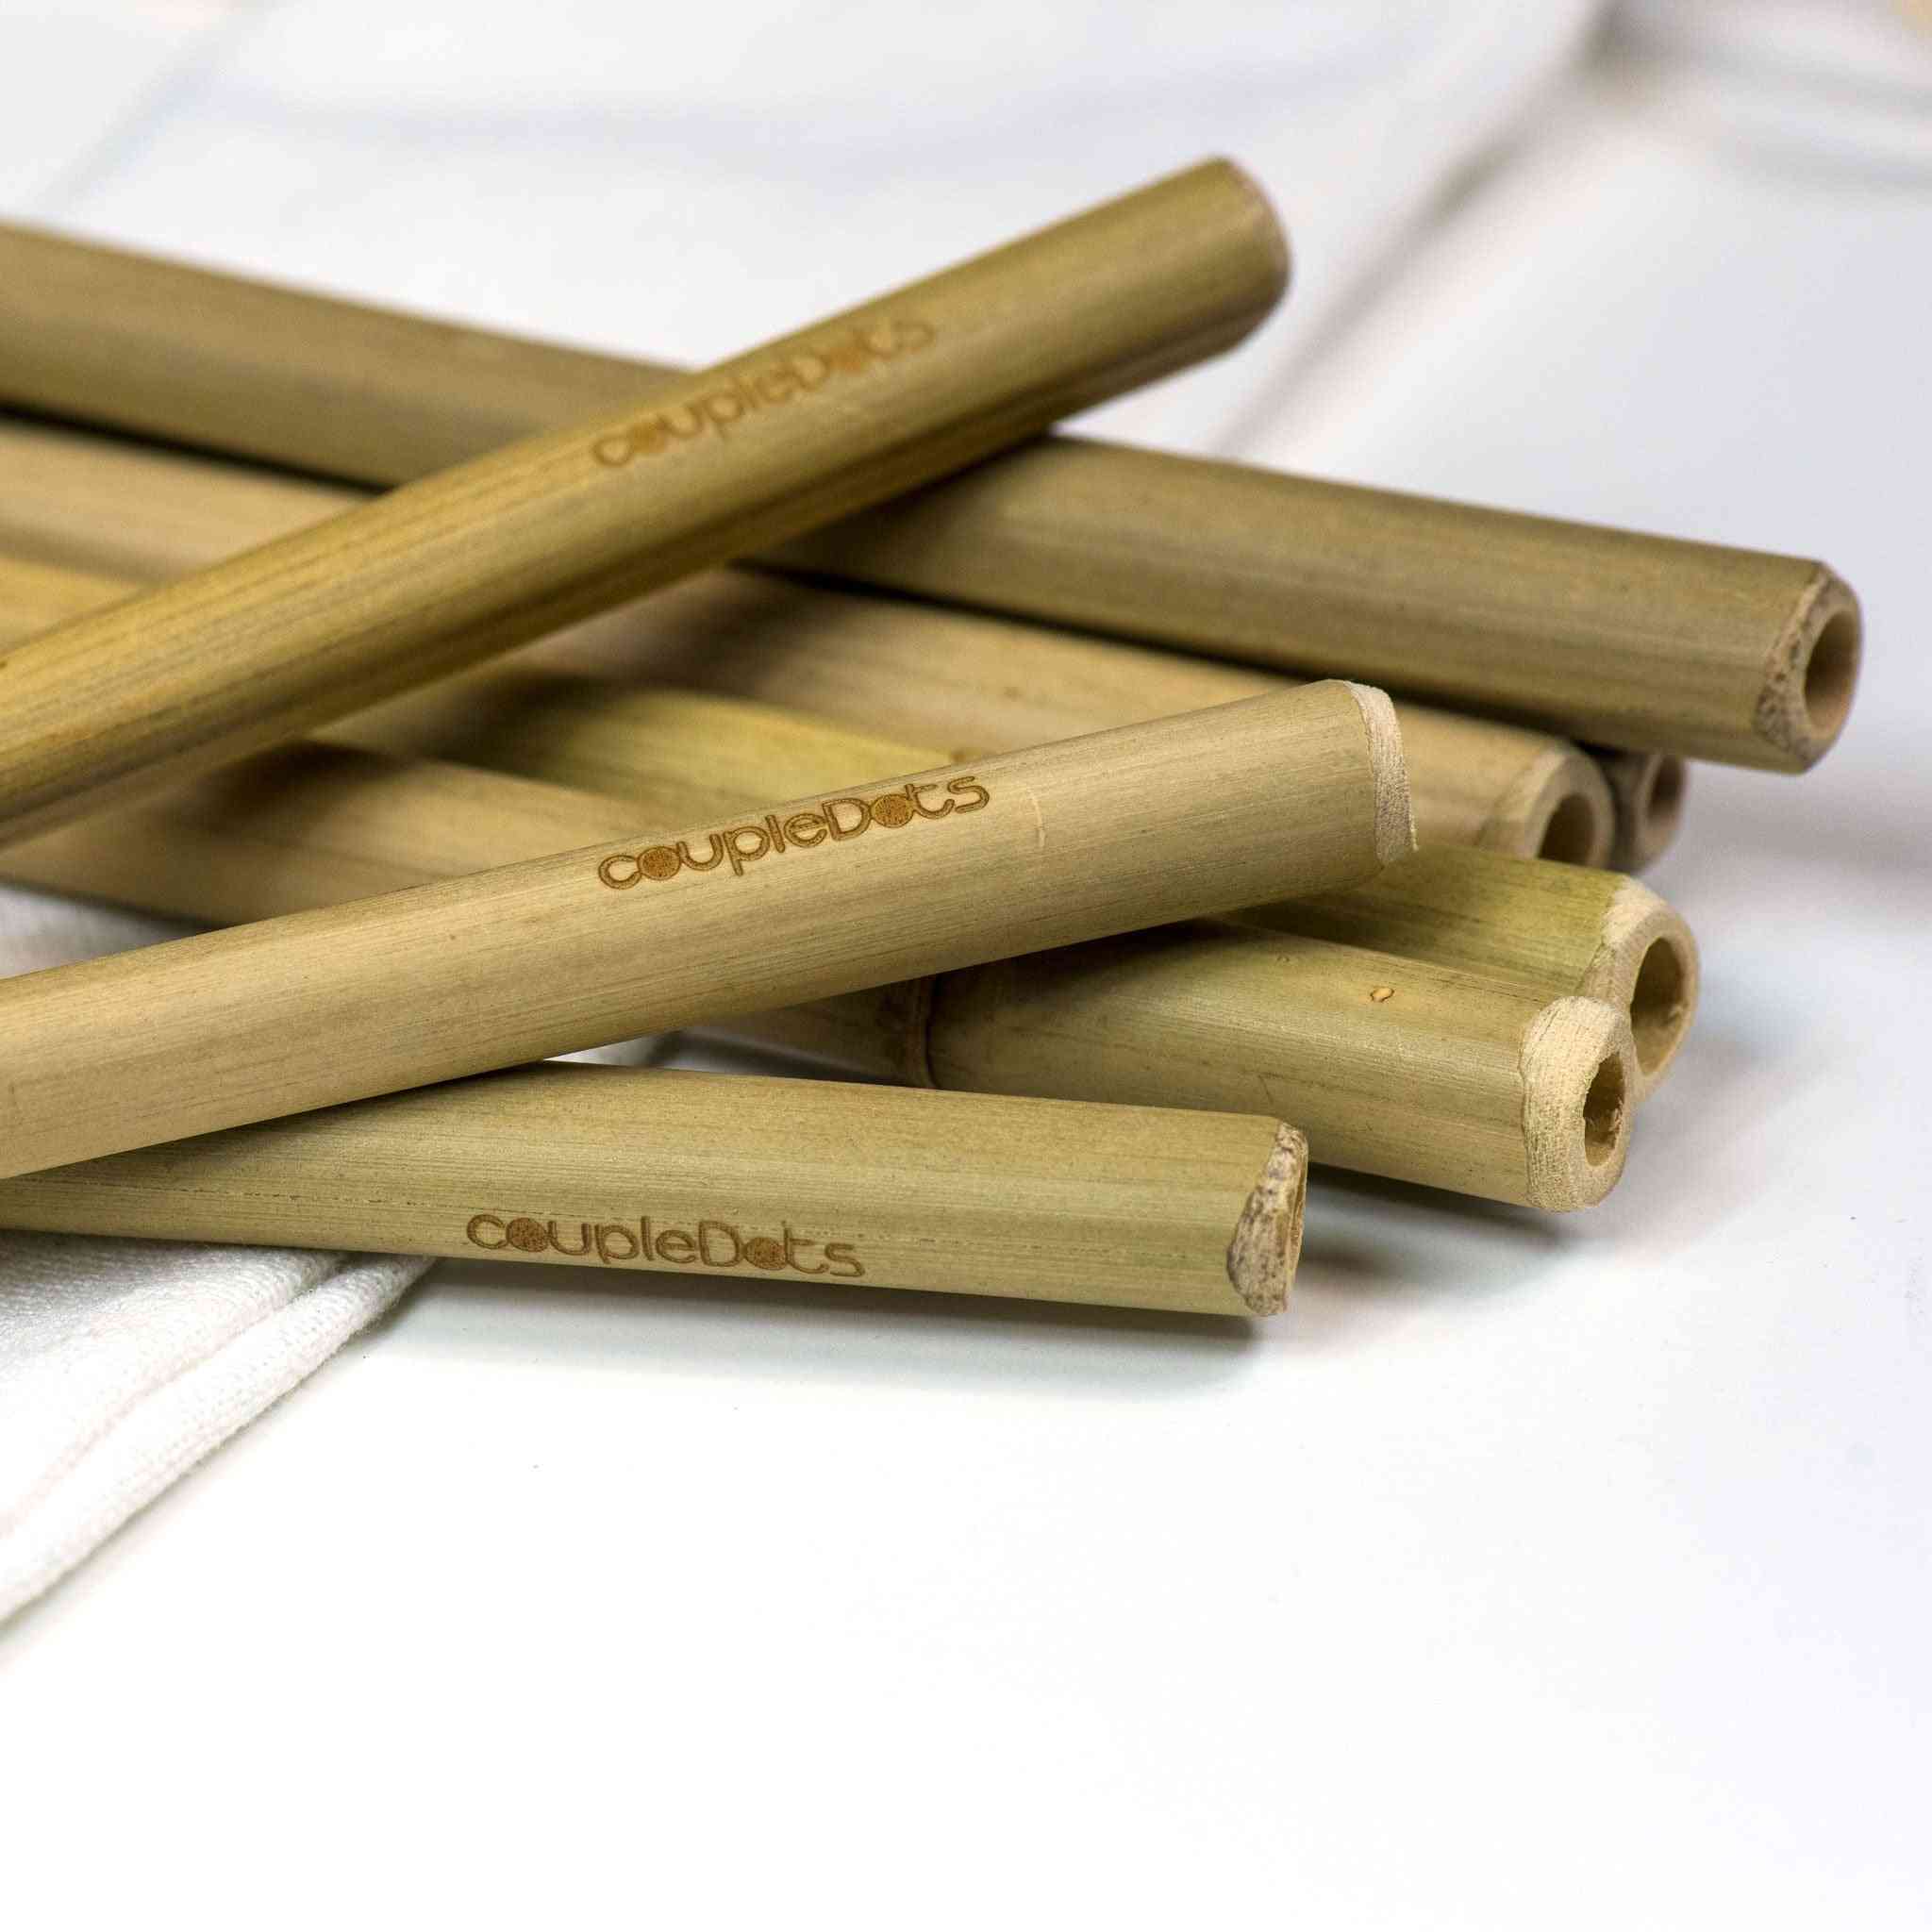 Canudos biodegradáveis de bambu